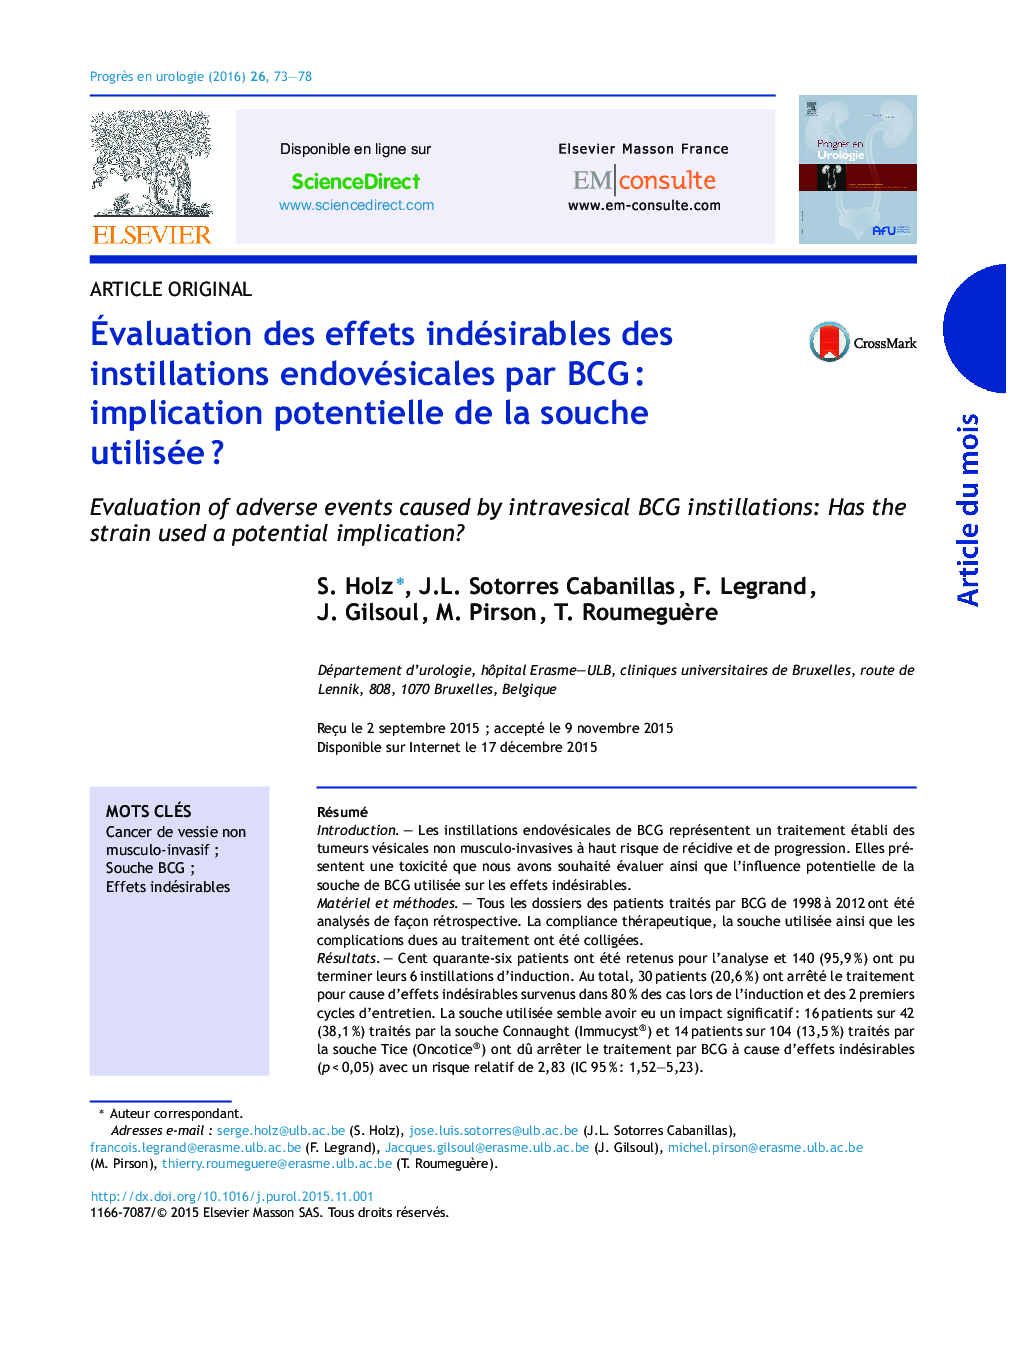 Ãvaluation des effets indésirables des instillations endovésicales par BCGÂ : implication potentielle de la souche utiliséeÂ ?